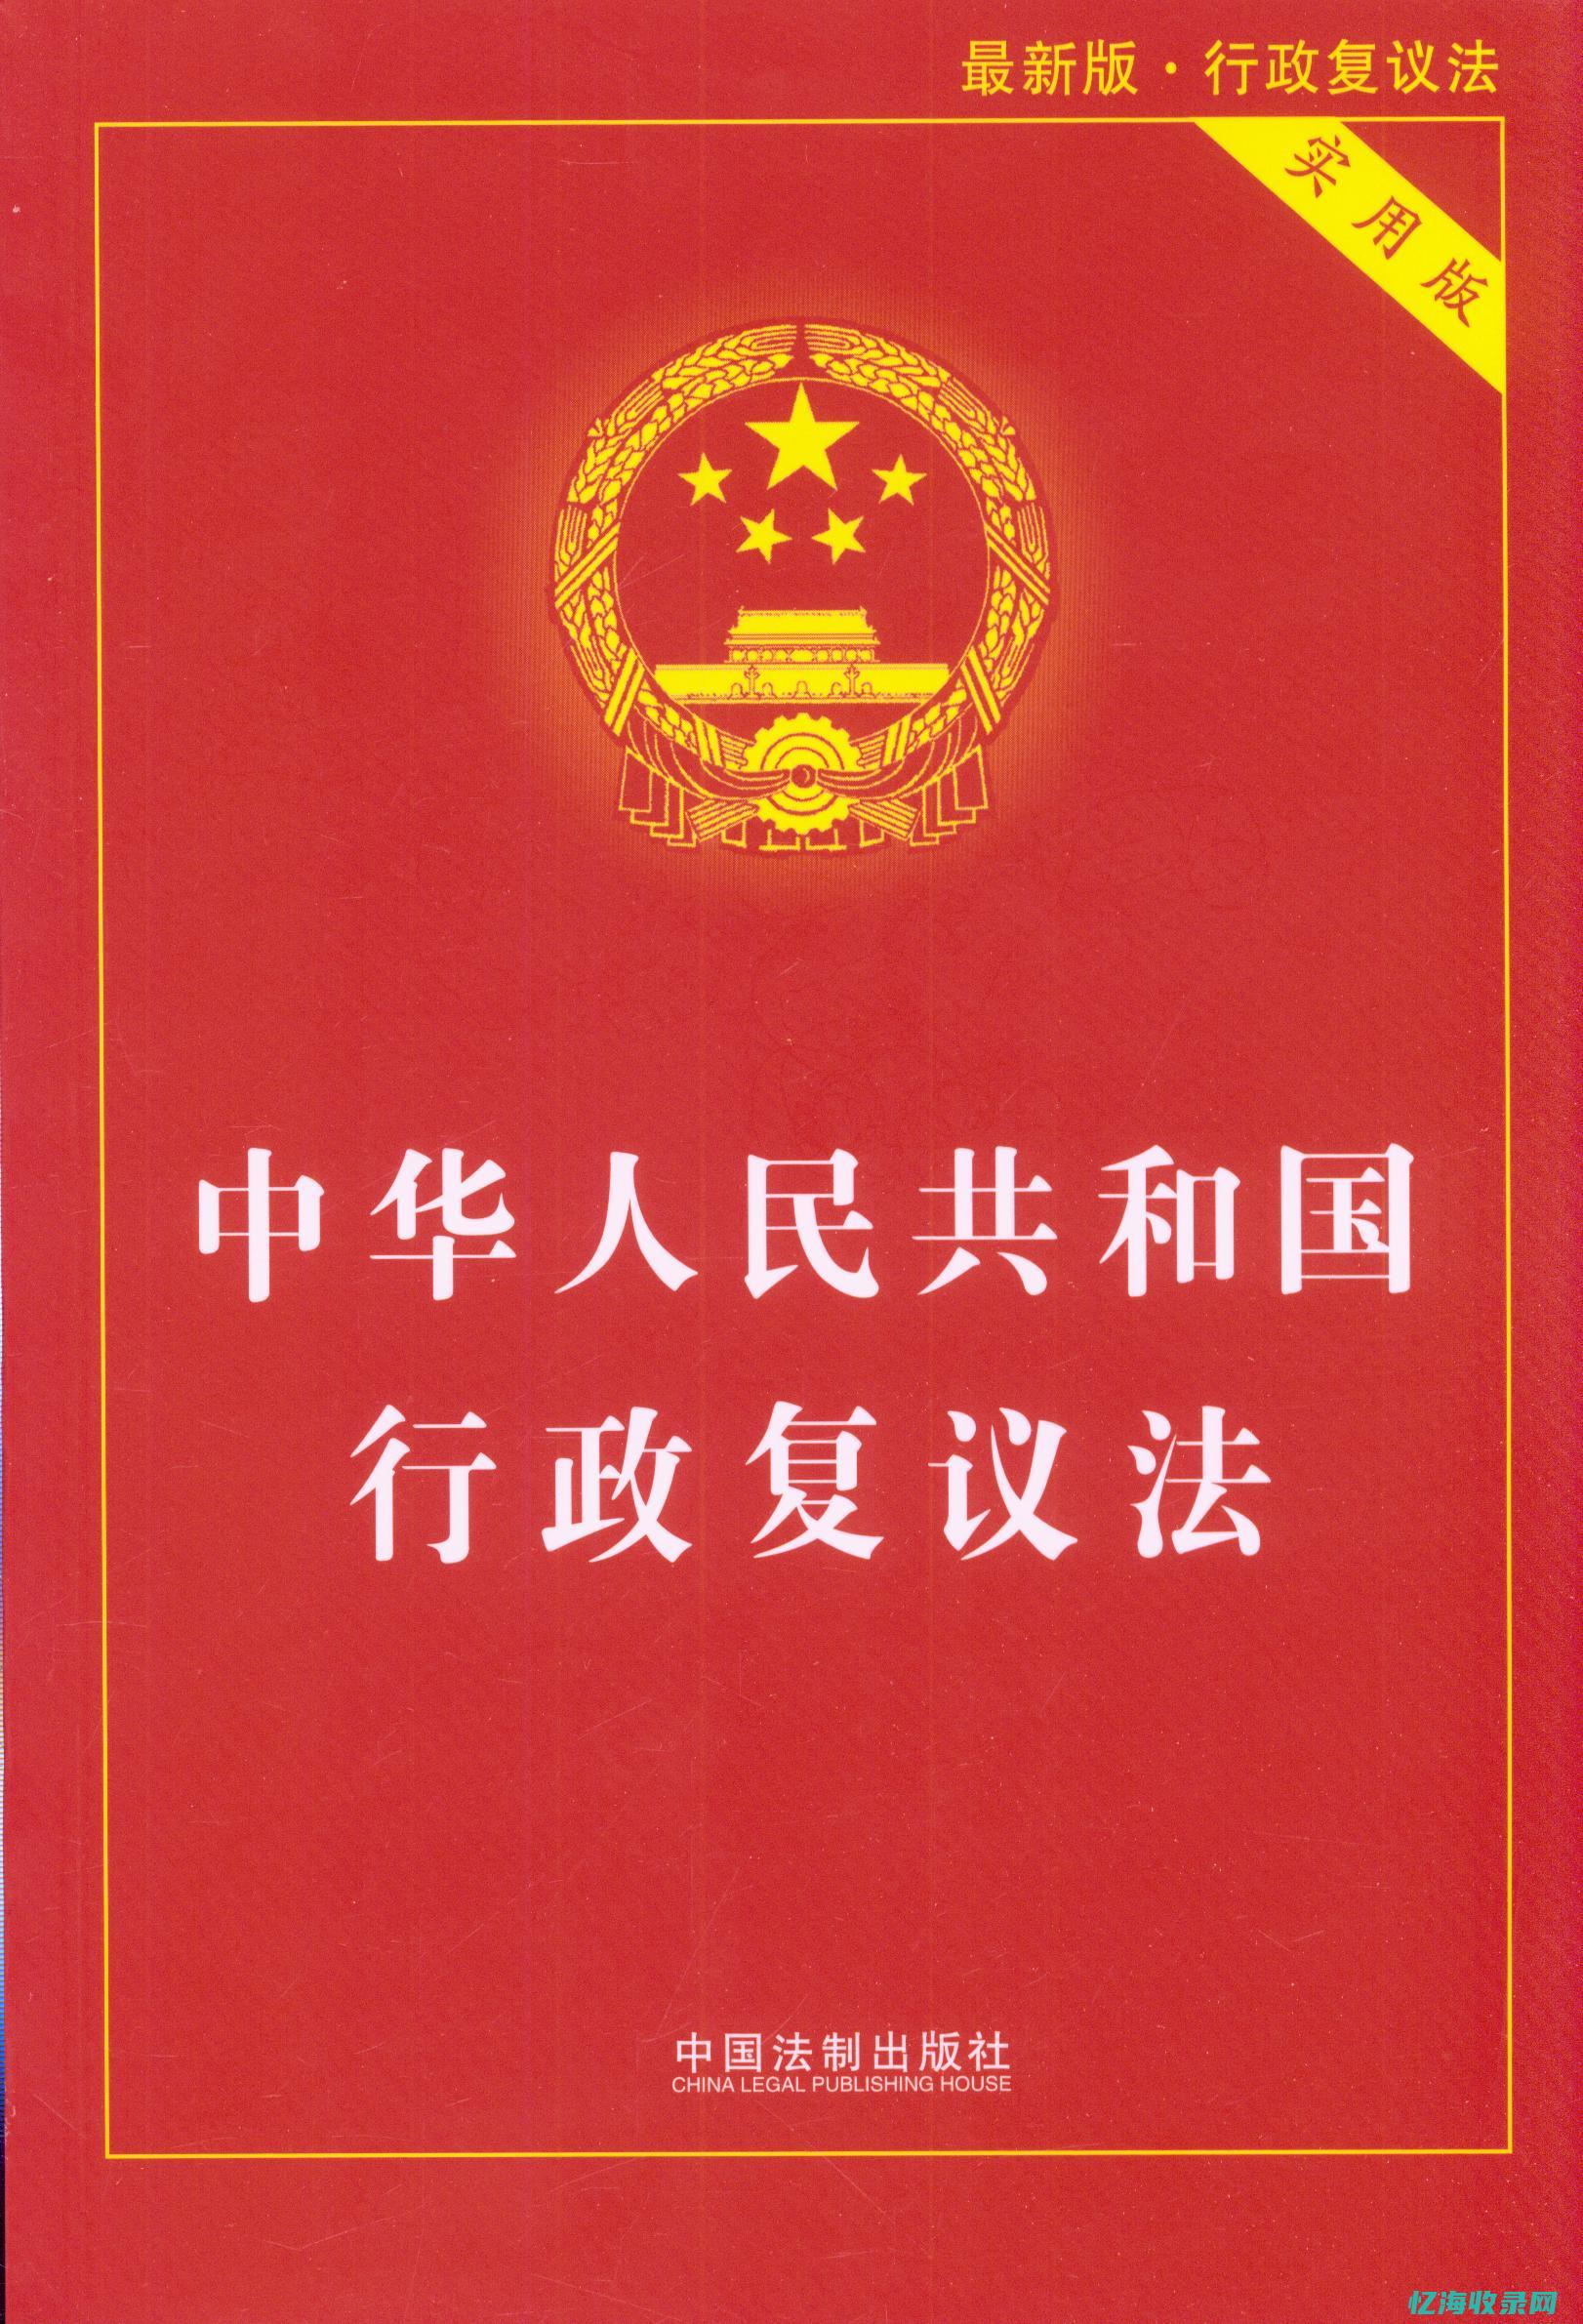 中华人民共和国电信业务运营容许证-p-p (中华人民共和国增值电信业务经营许可证)